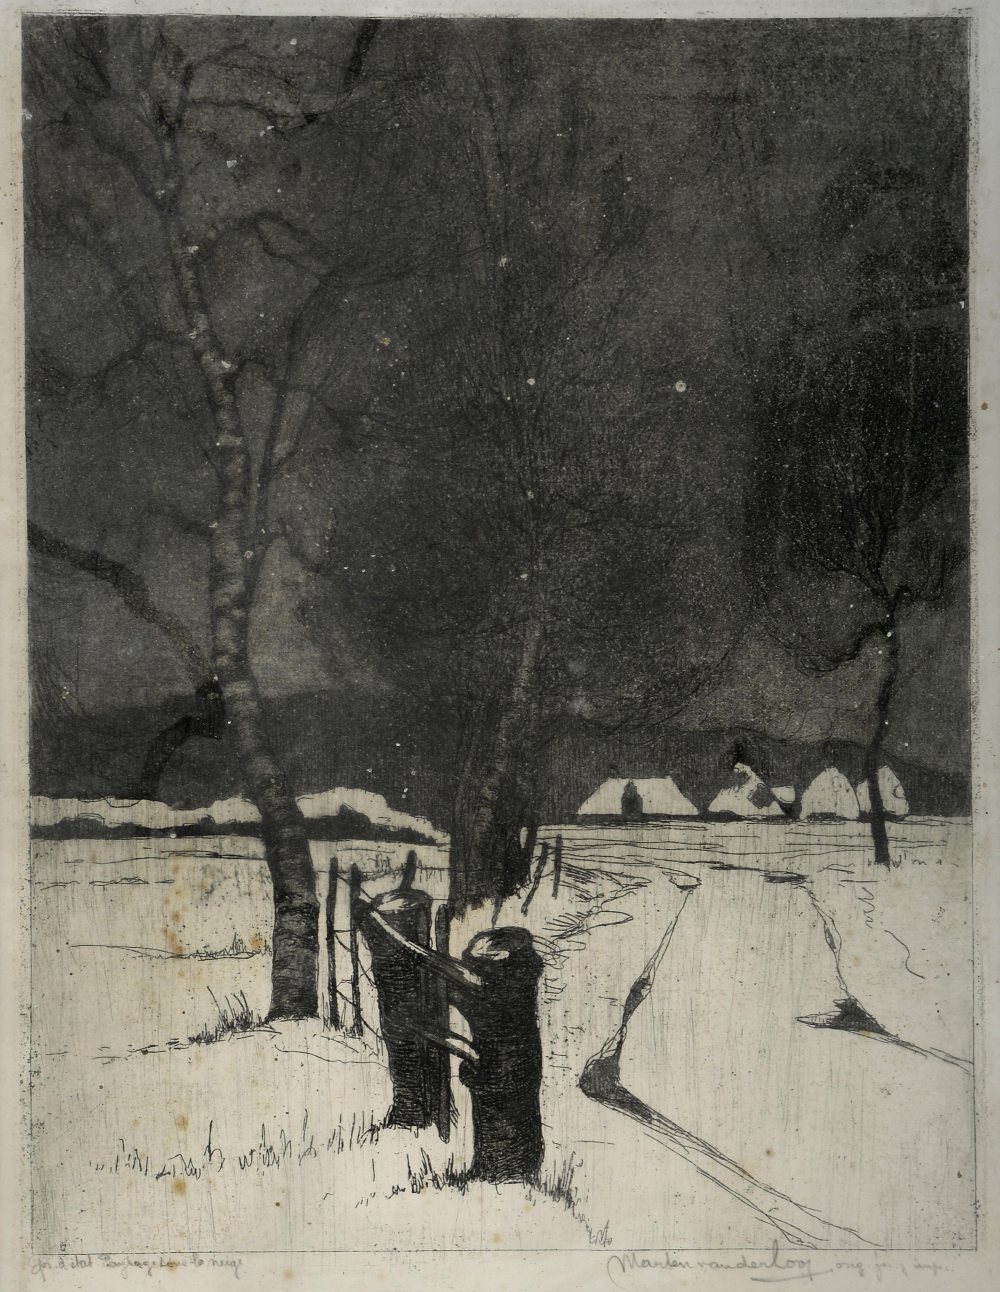 Marten van der Loo (Belgian, 1880-1920), landscape print signed in pencil, 42 x 31 cm .